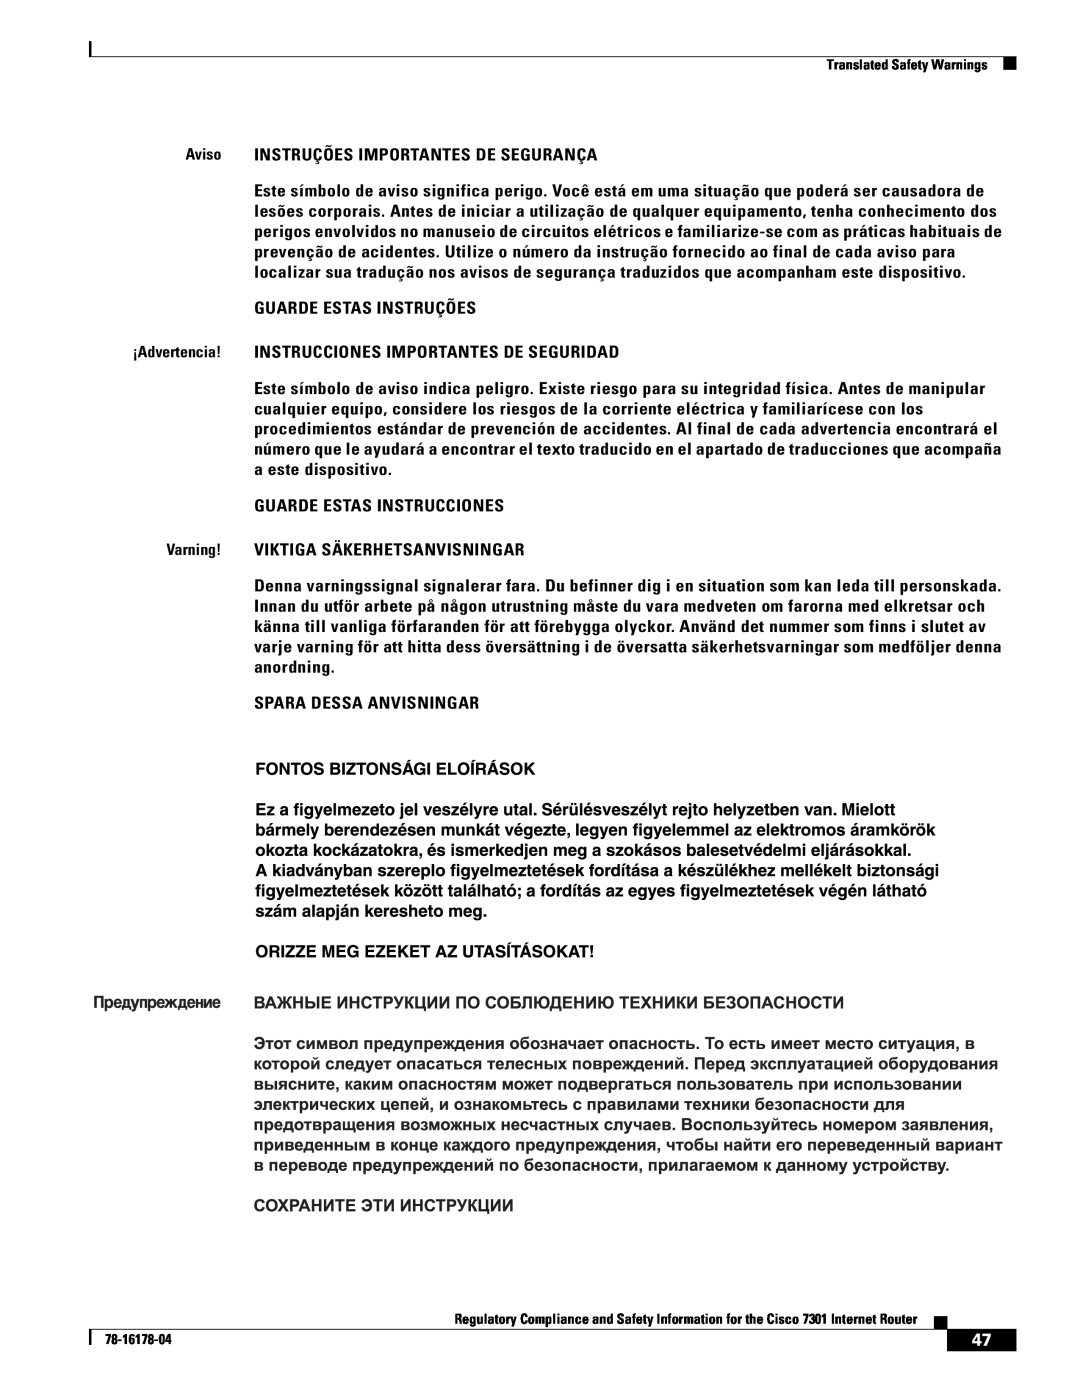 Cisco Systems CISCO7301 manual Aviso INSTRUÇÕES IMPORTANTES DE SEGURANÇA 